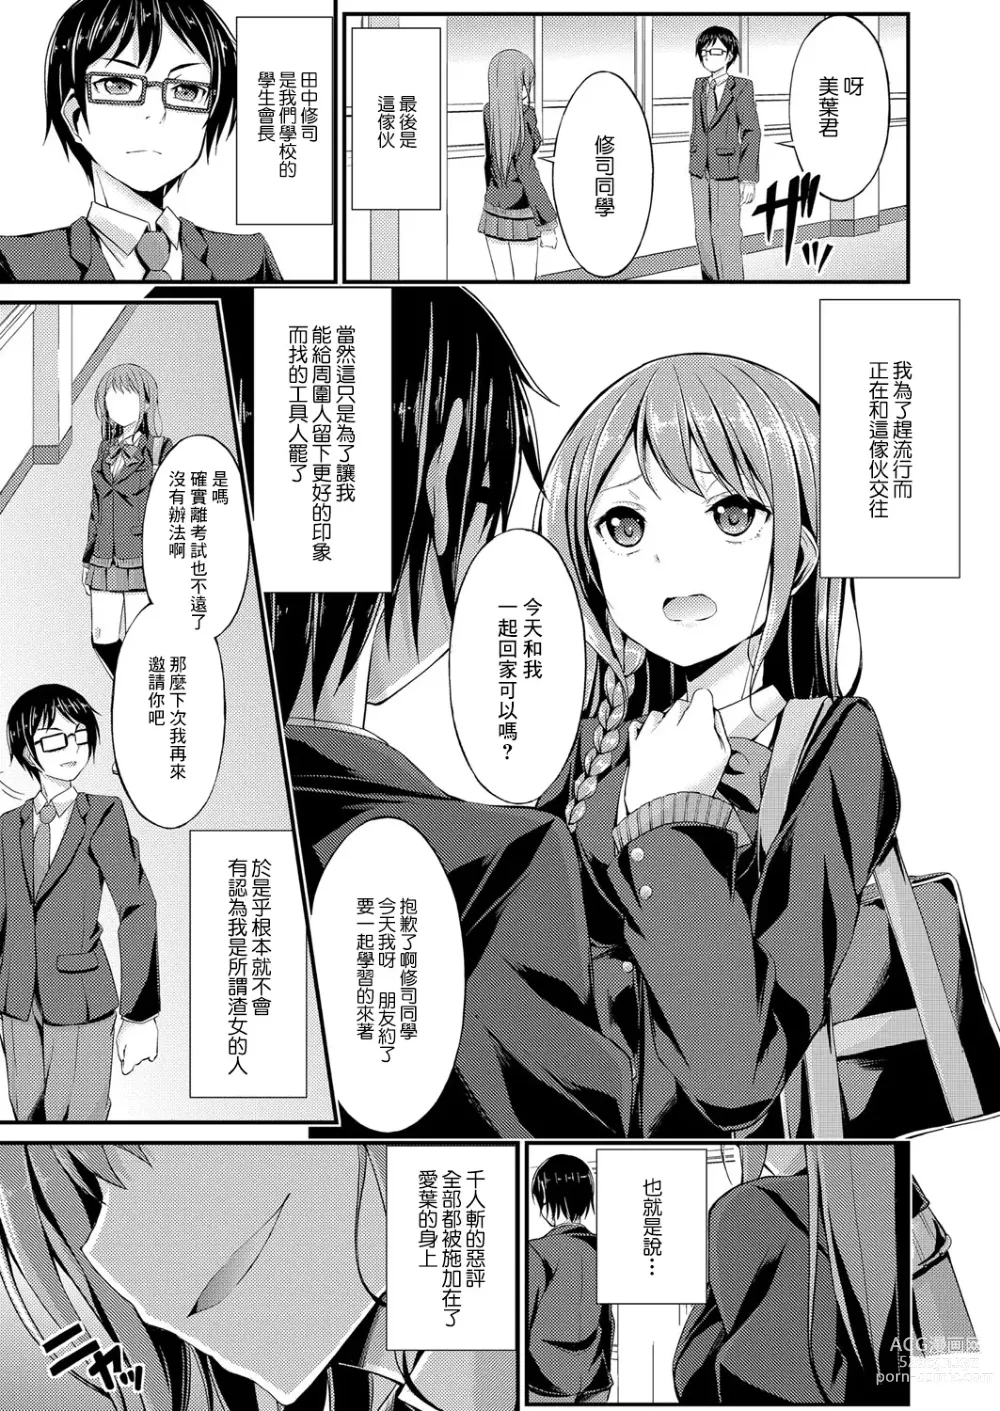 Page 3 of manga Himitsu no Asobi